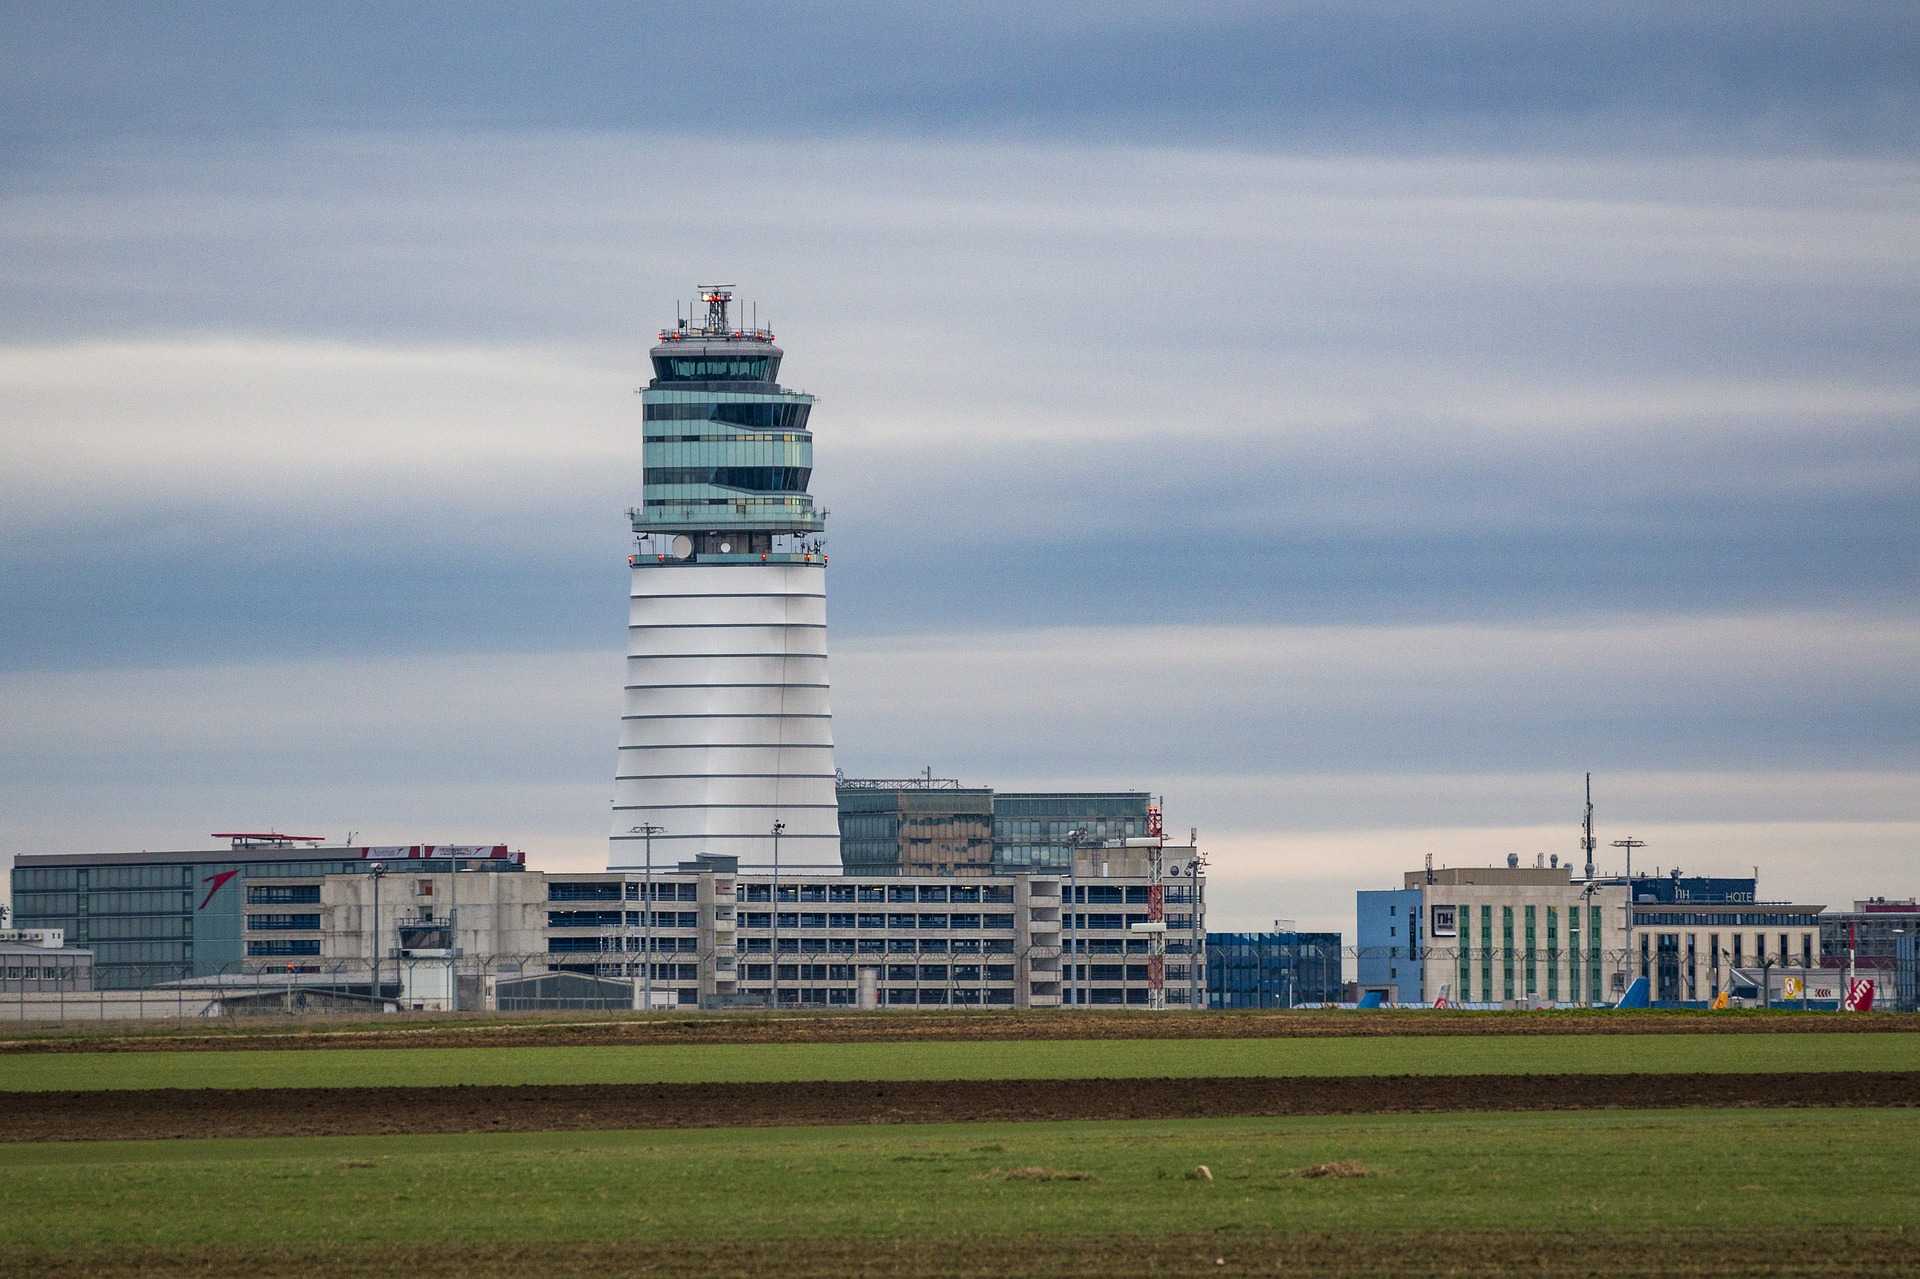 Flughafen Wien Tower und Gelände